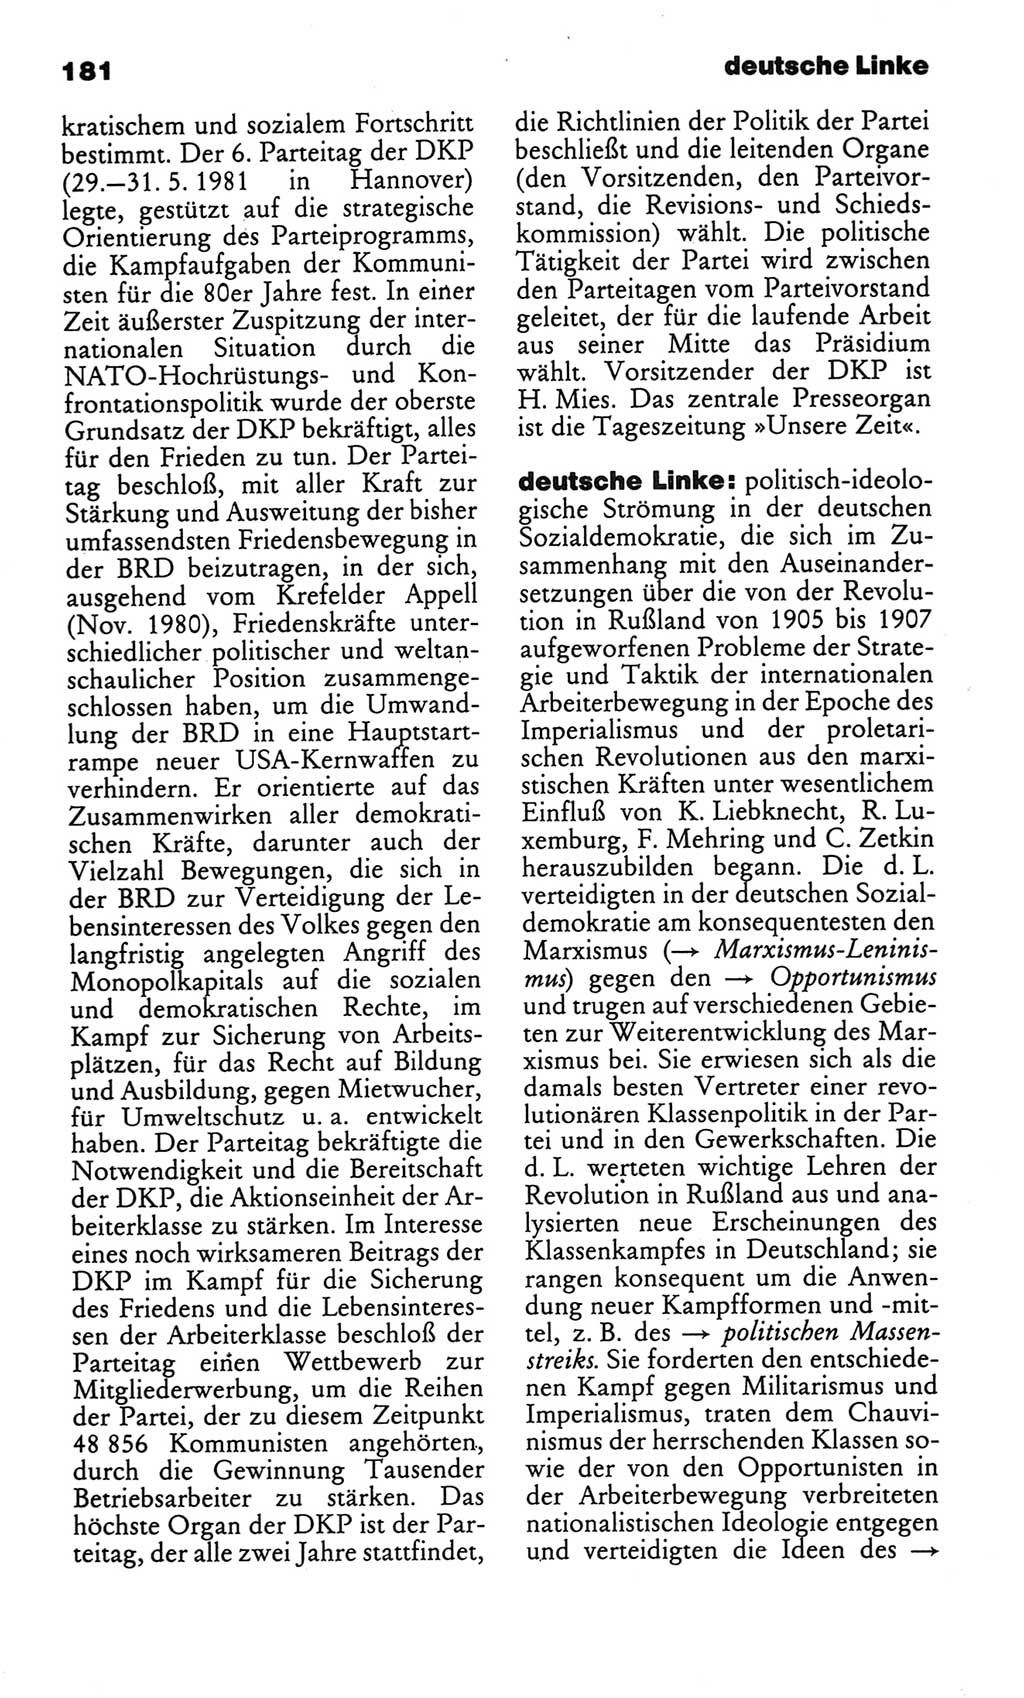 Kleines politisches Wörterbuch [Deutsche Demokratische Republik (DDR)] 1986, Seite 181 (Kl. pol. Wb. DDR 1986, S. 181)